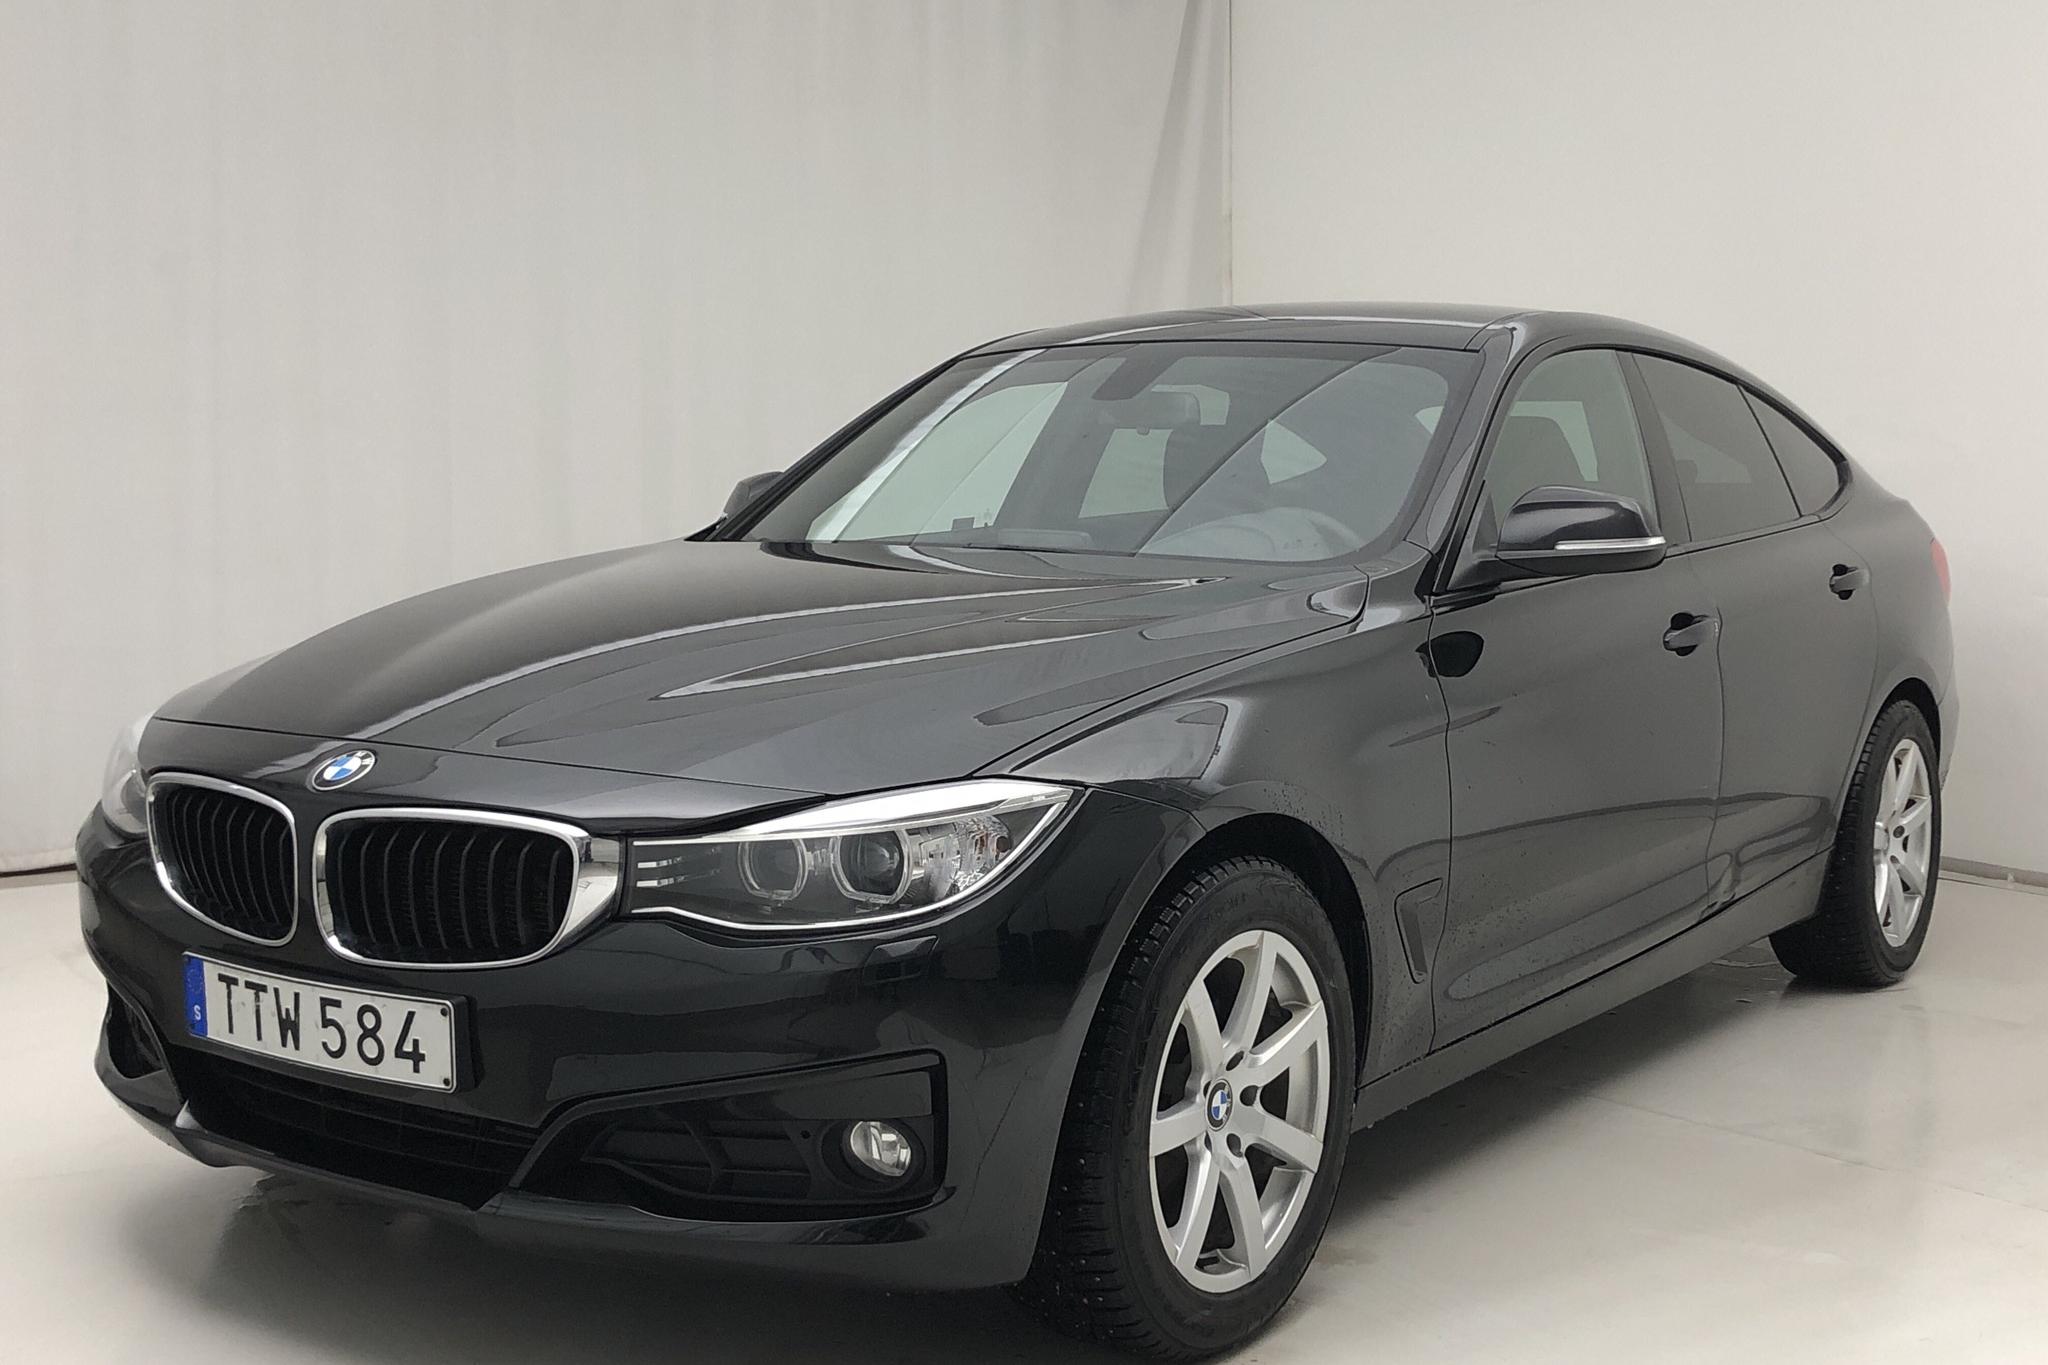 BMW 320d GT xDrive, F34 (184hk) - 178 590 km - Automatic - black - 2015